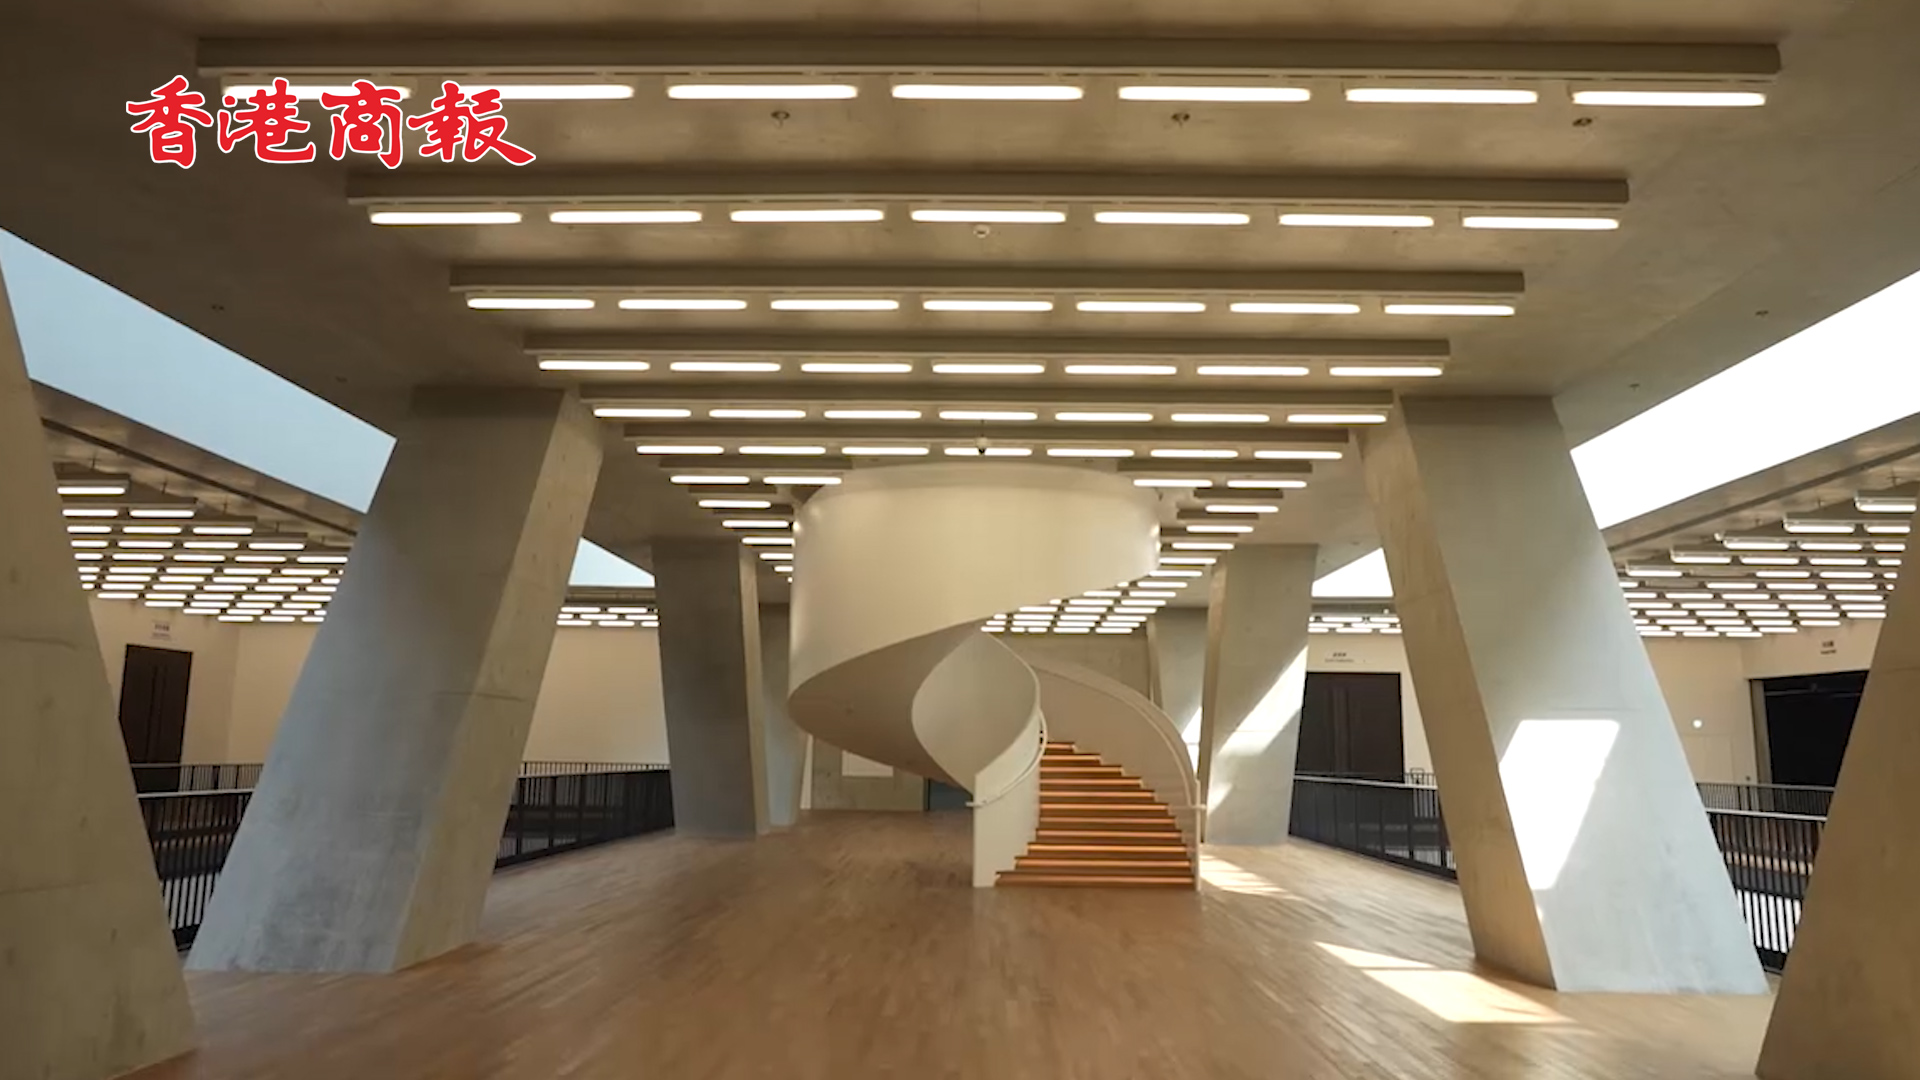 有片丨M+博物館12日開幕 遊走建築新空間 細賞藝術新領域